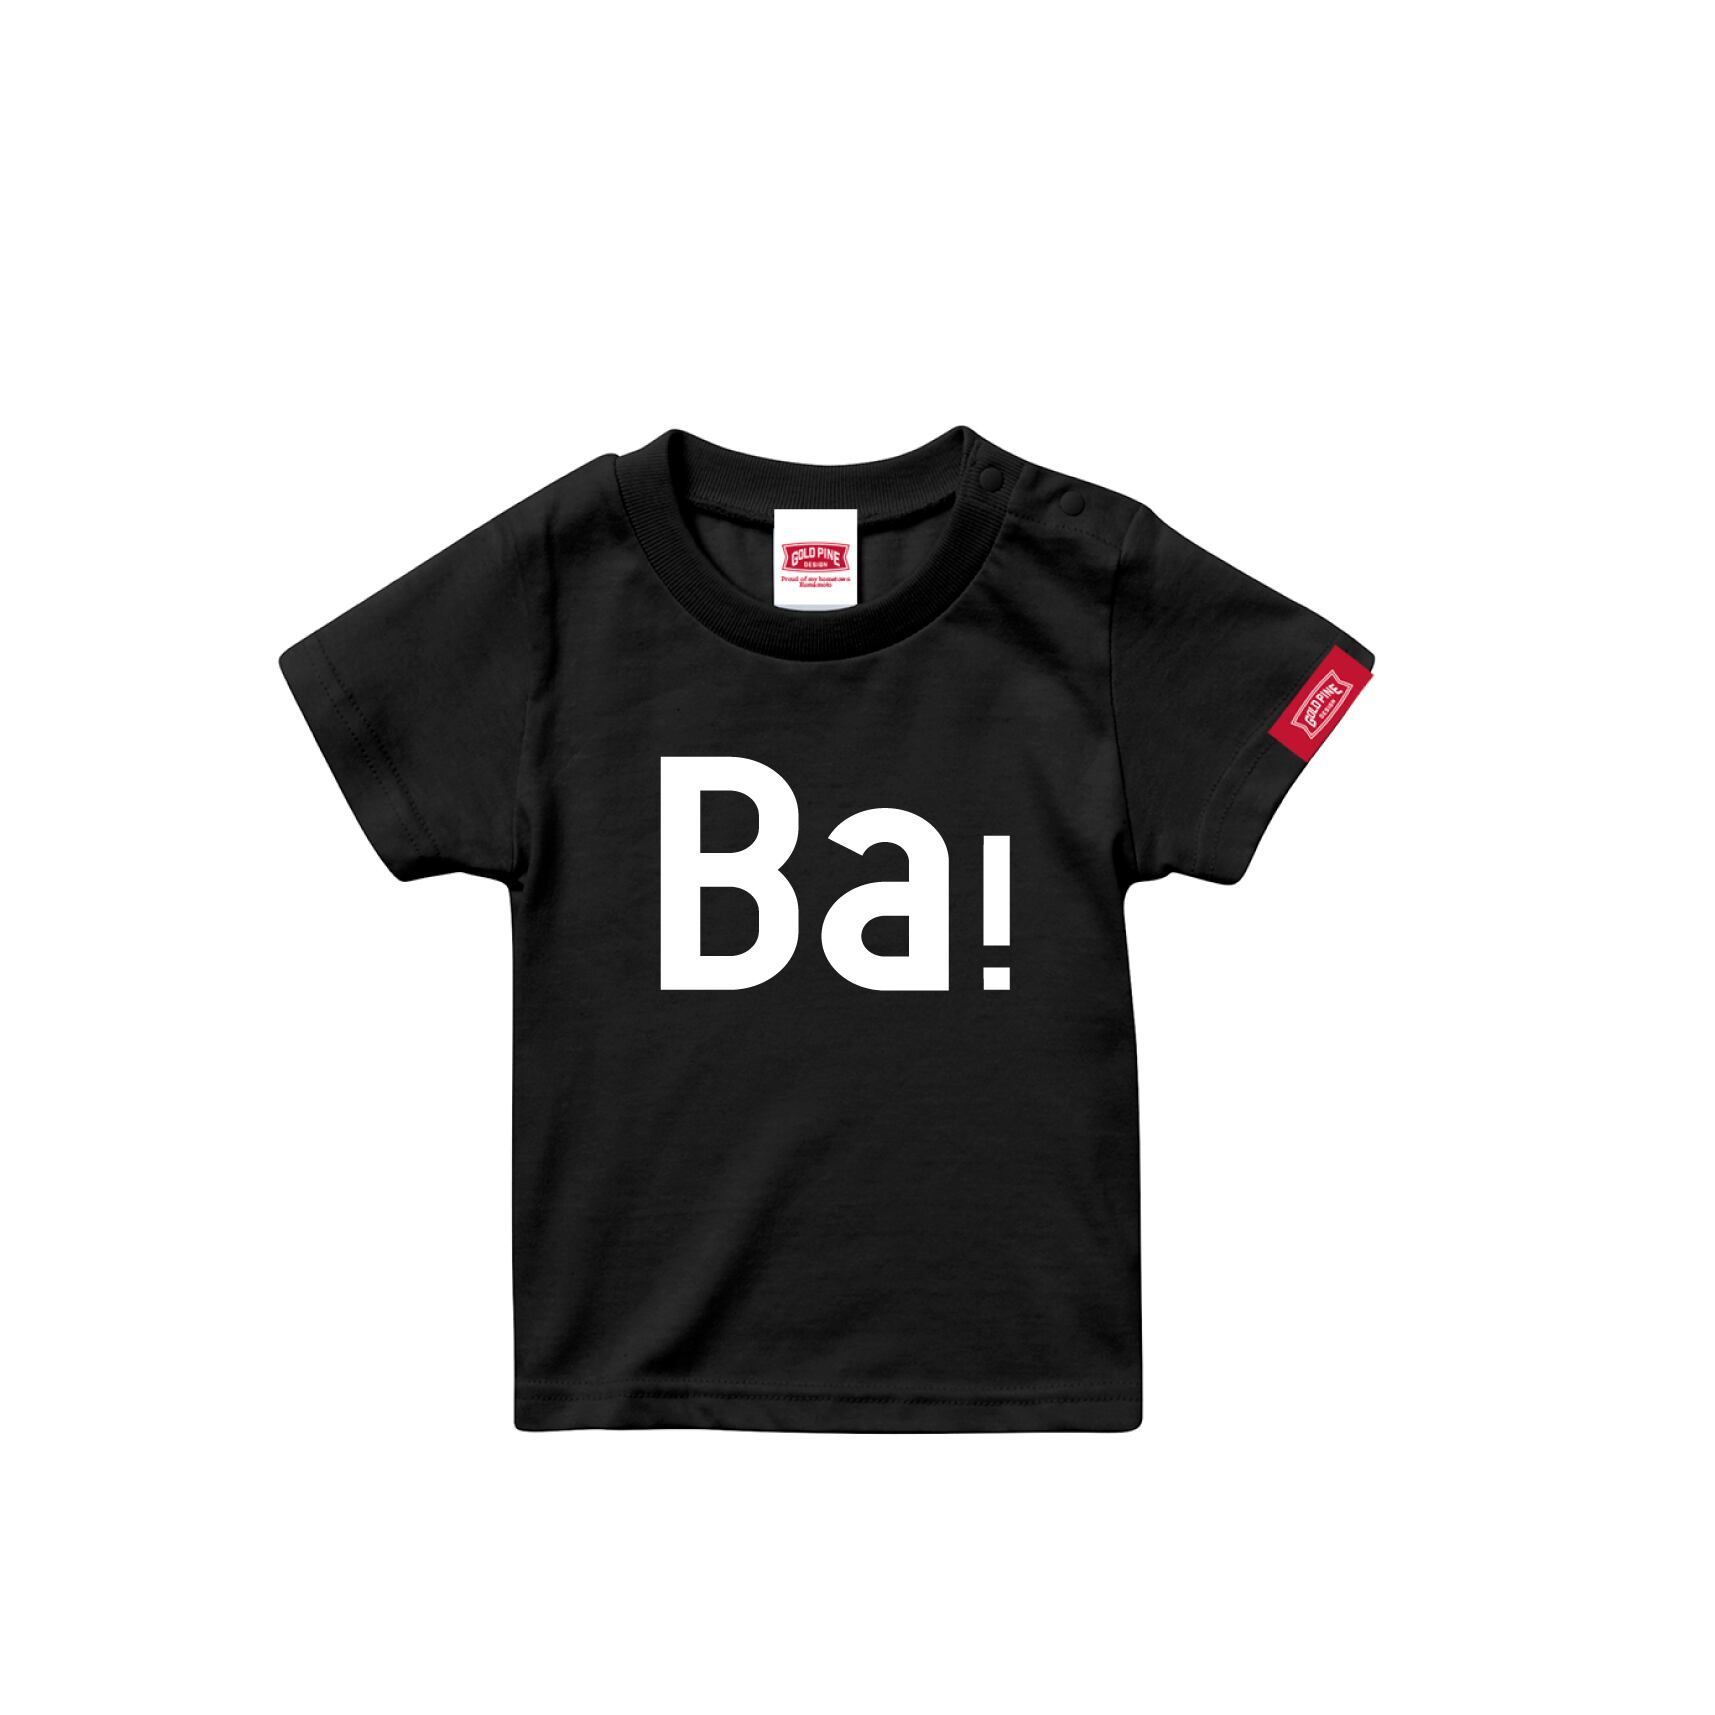 Ba！-Tshirt【Kids】Black